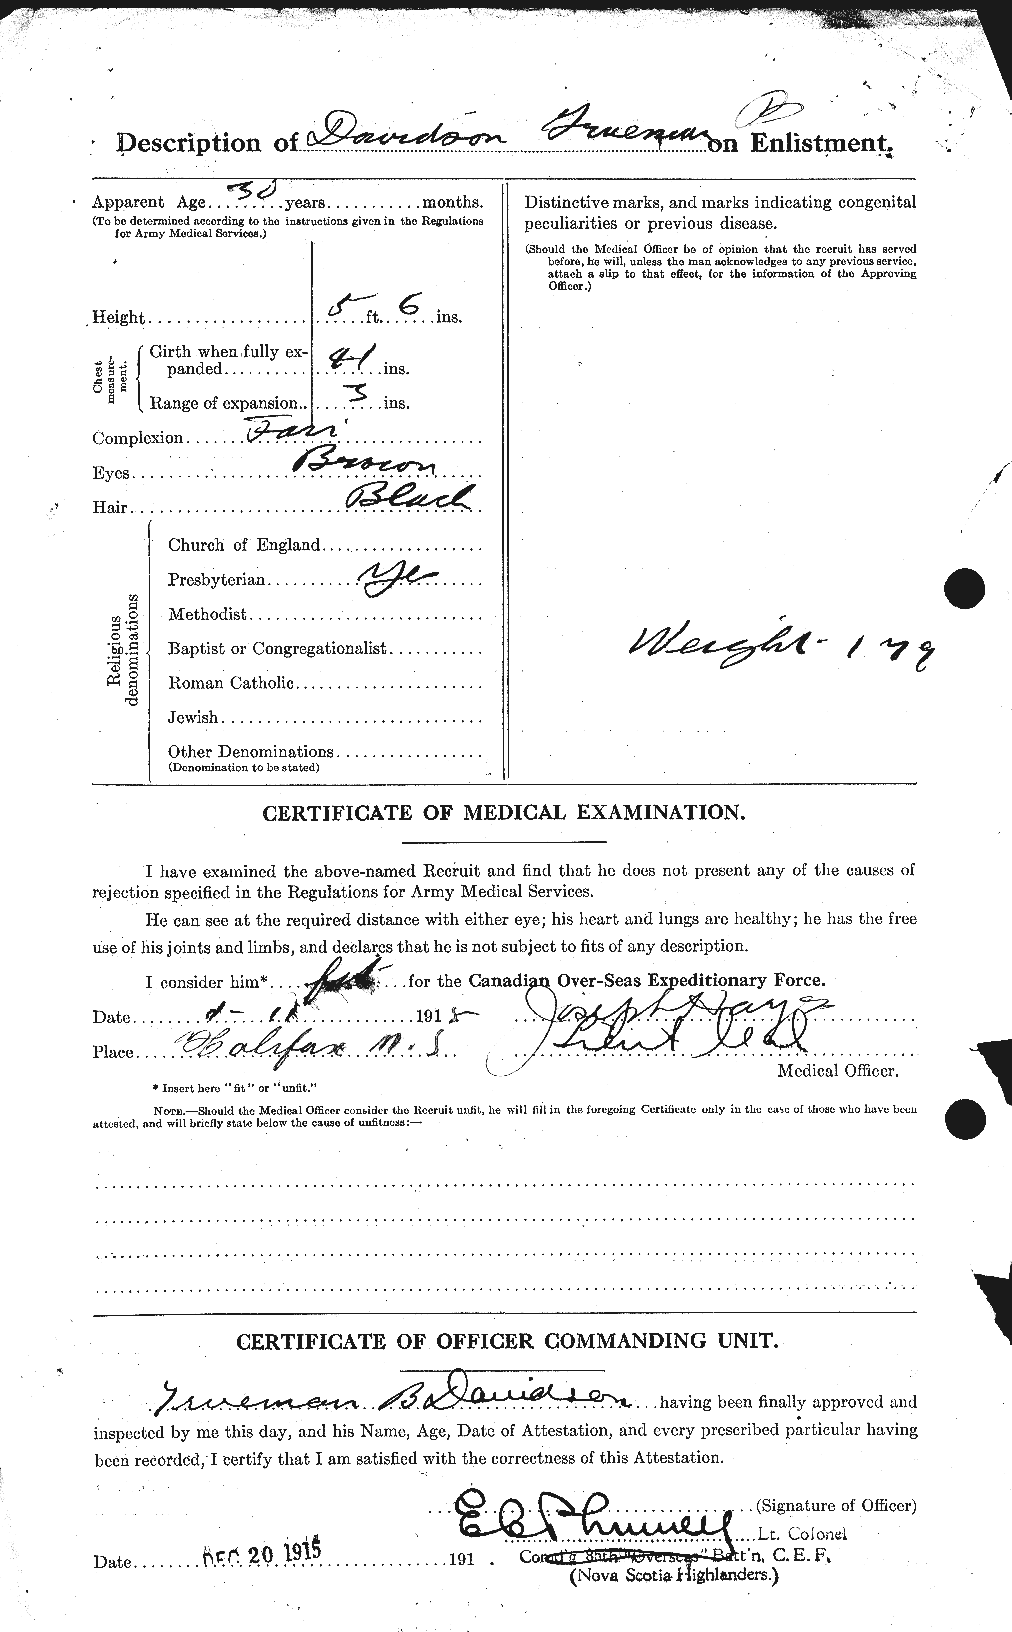 Dossiers du Personnel de la Première Guerre mondiale - CEC 278701b